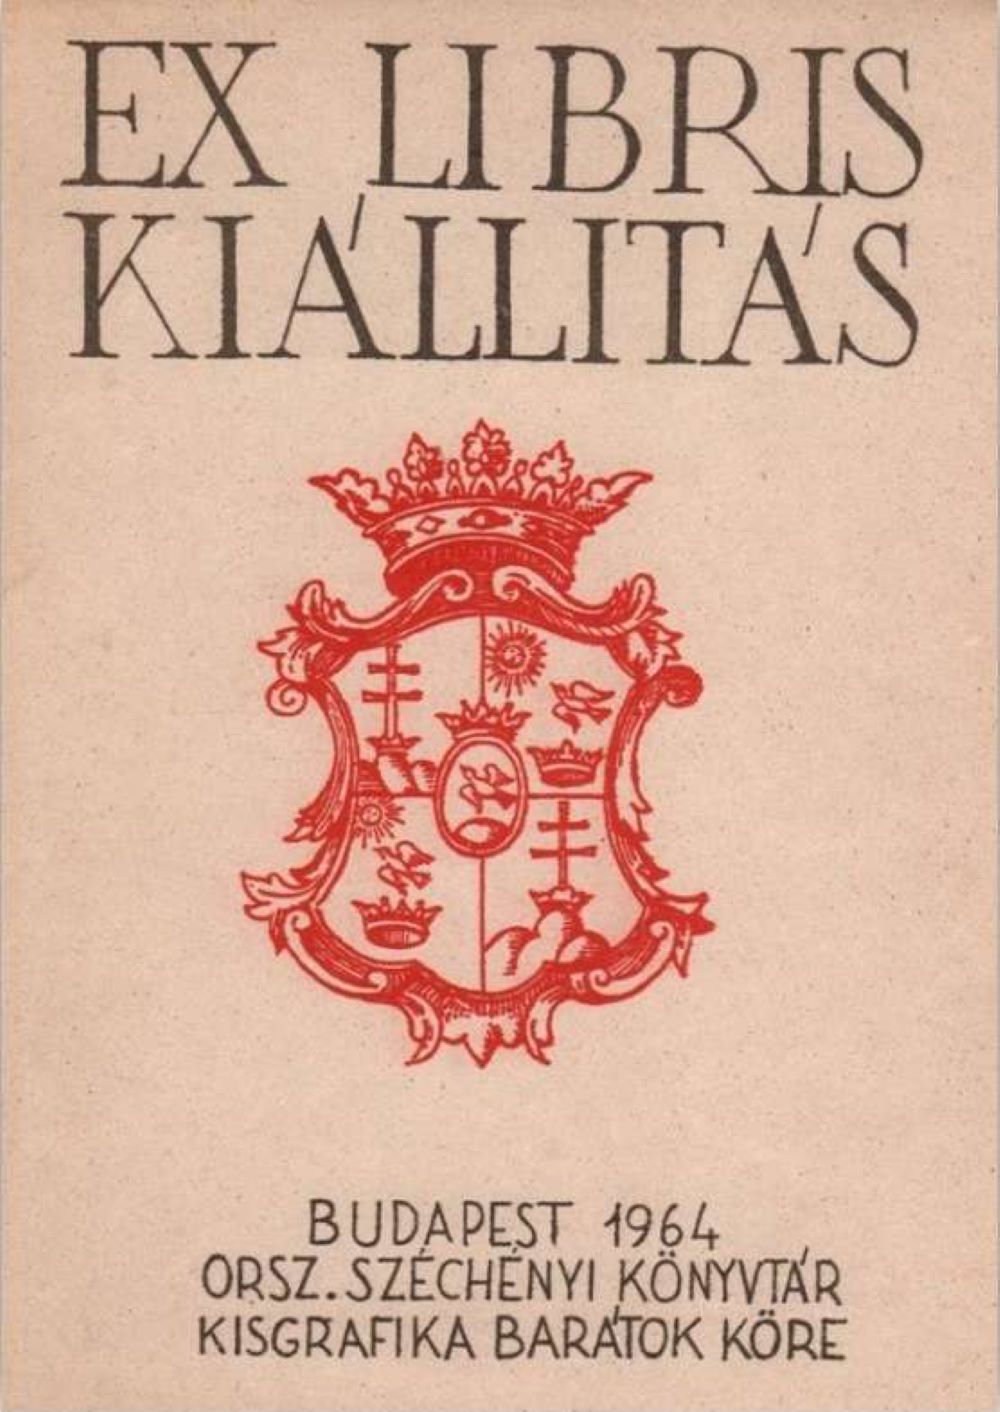 A Magyar írók, művészek és tudósok ex librisei (1964) című tematikus kiállítás katalógusának címlapja gróf Széchényi Ferenc (1754–1820) fametszetű címeres könyvjegyével